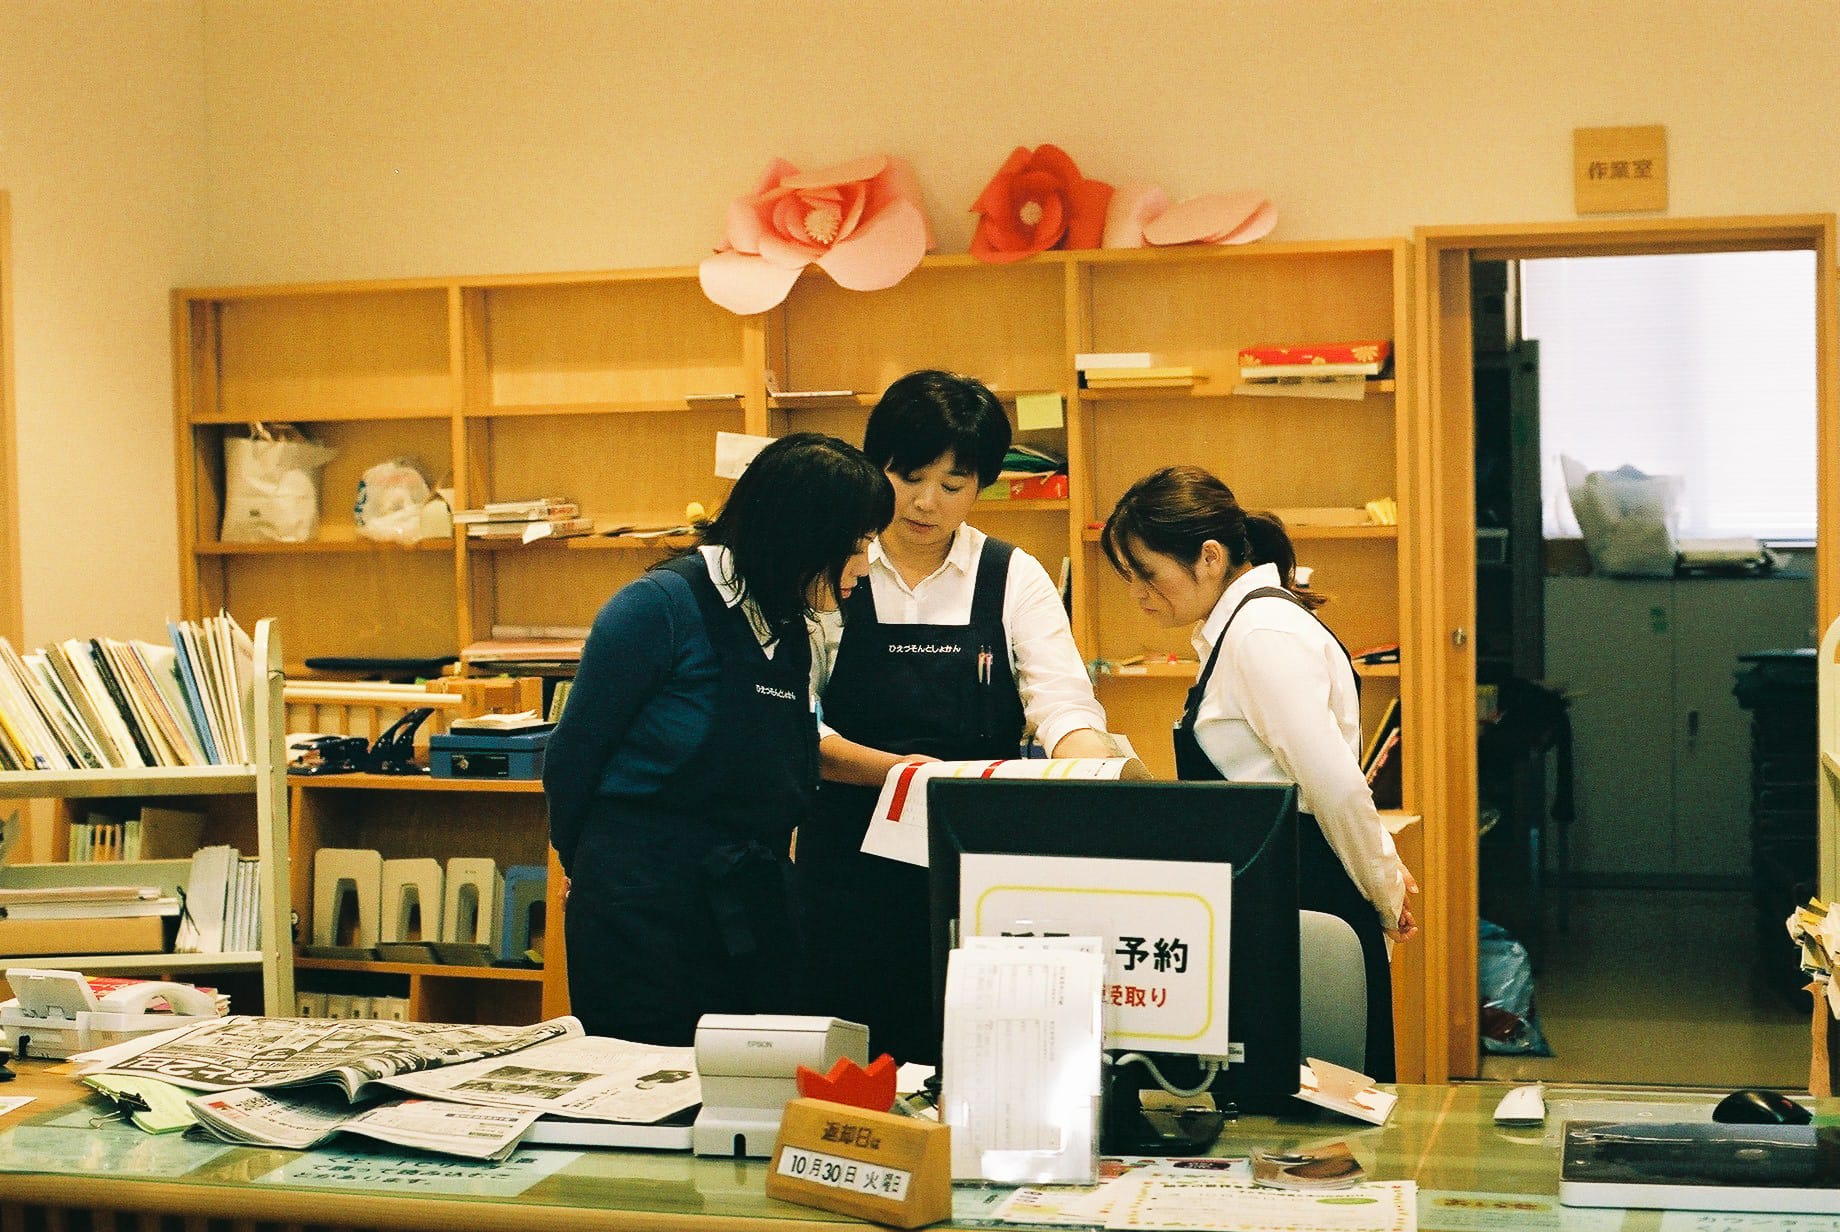 図書館のオープン当初から一緒に働く佐伯美由紀さん（写真左）と、この4月に入ったばかりだという岩田愛さん（右）。